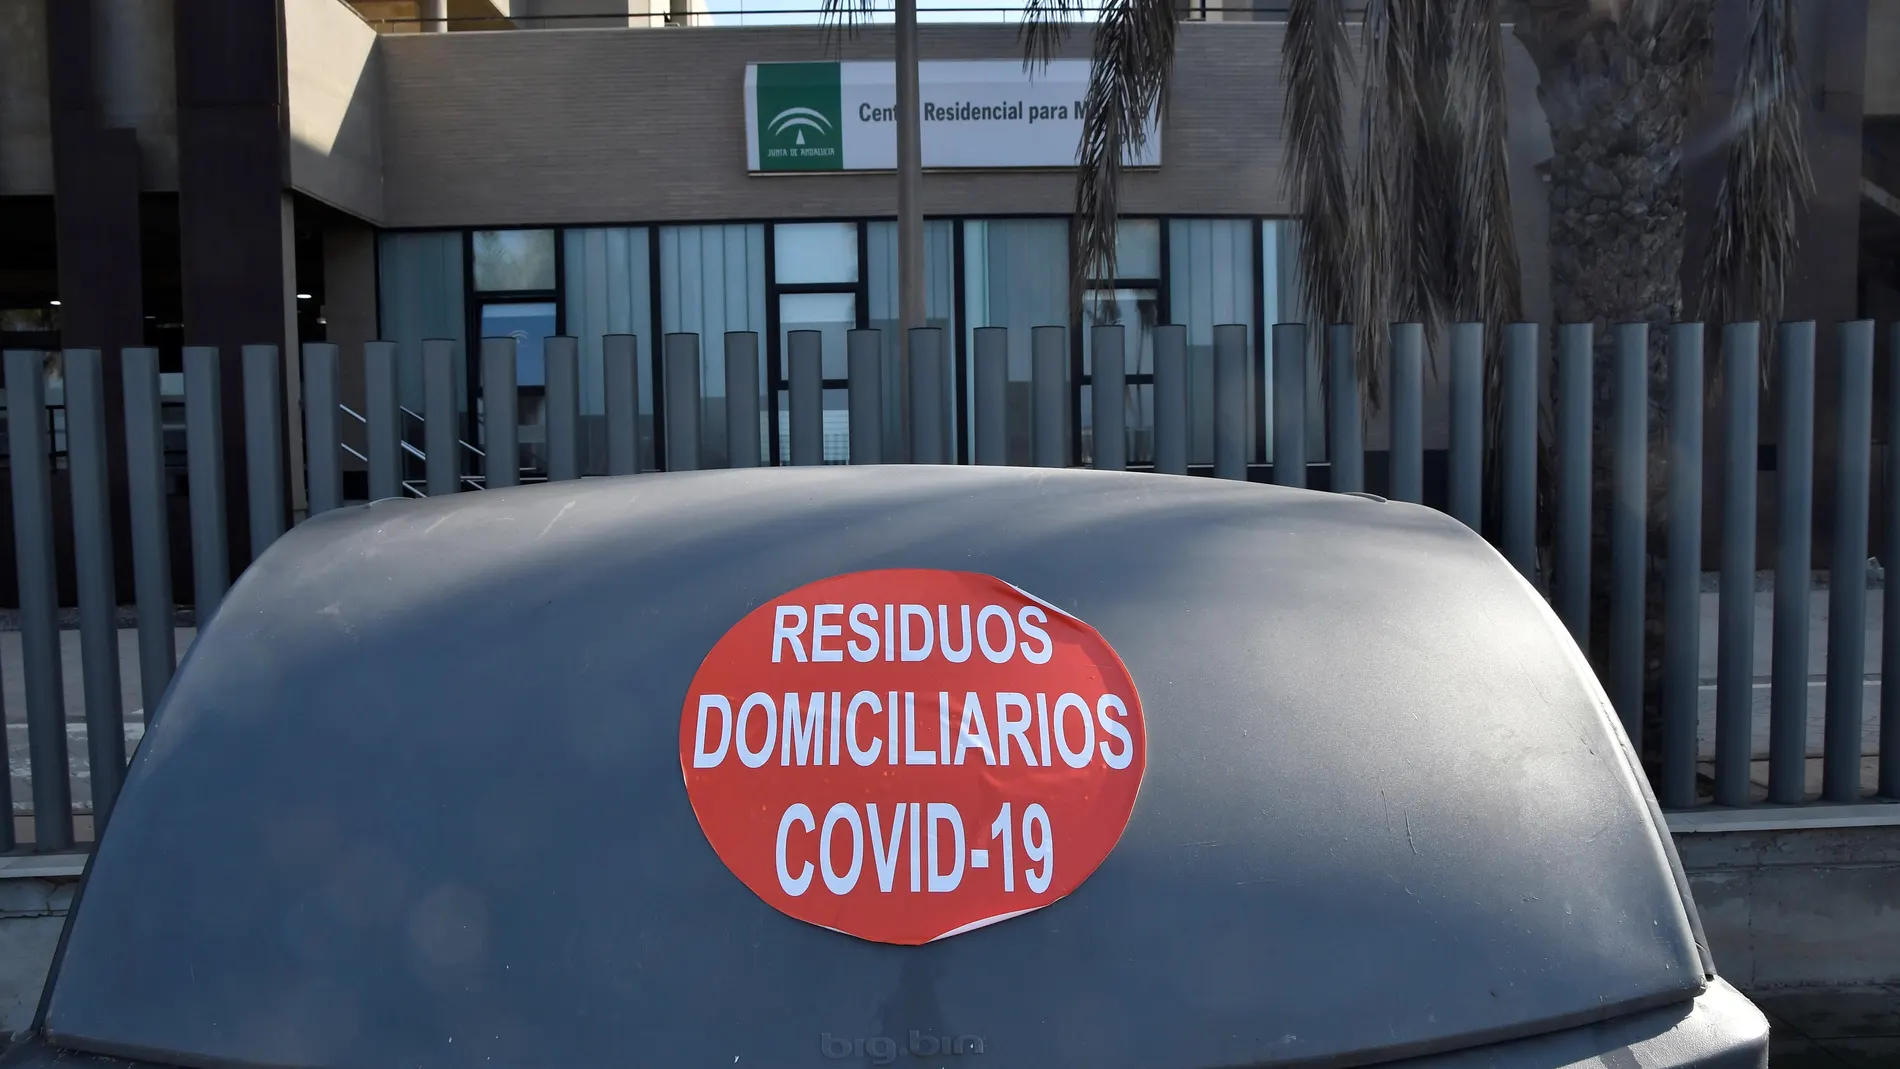 Residencia "El Zapillo" de Almería donde se confirmó brote de COVID-19